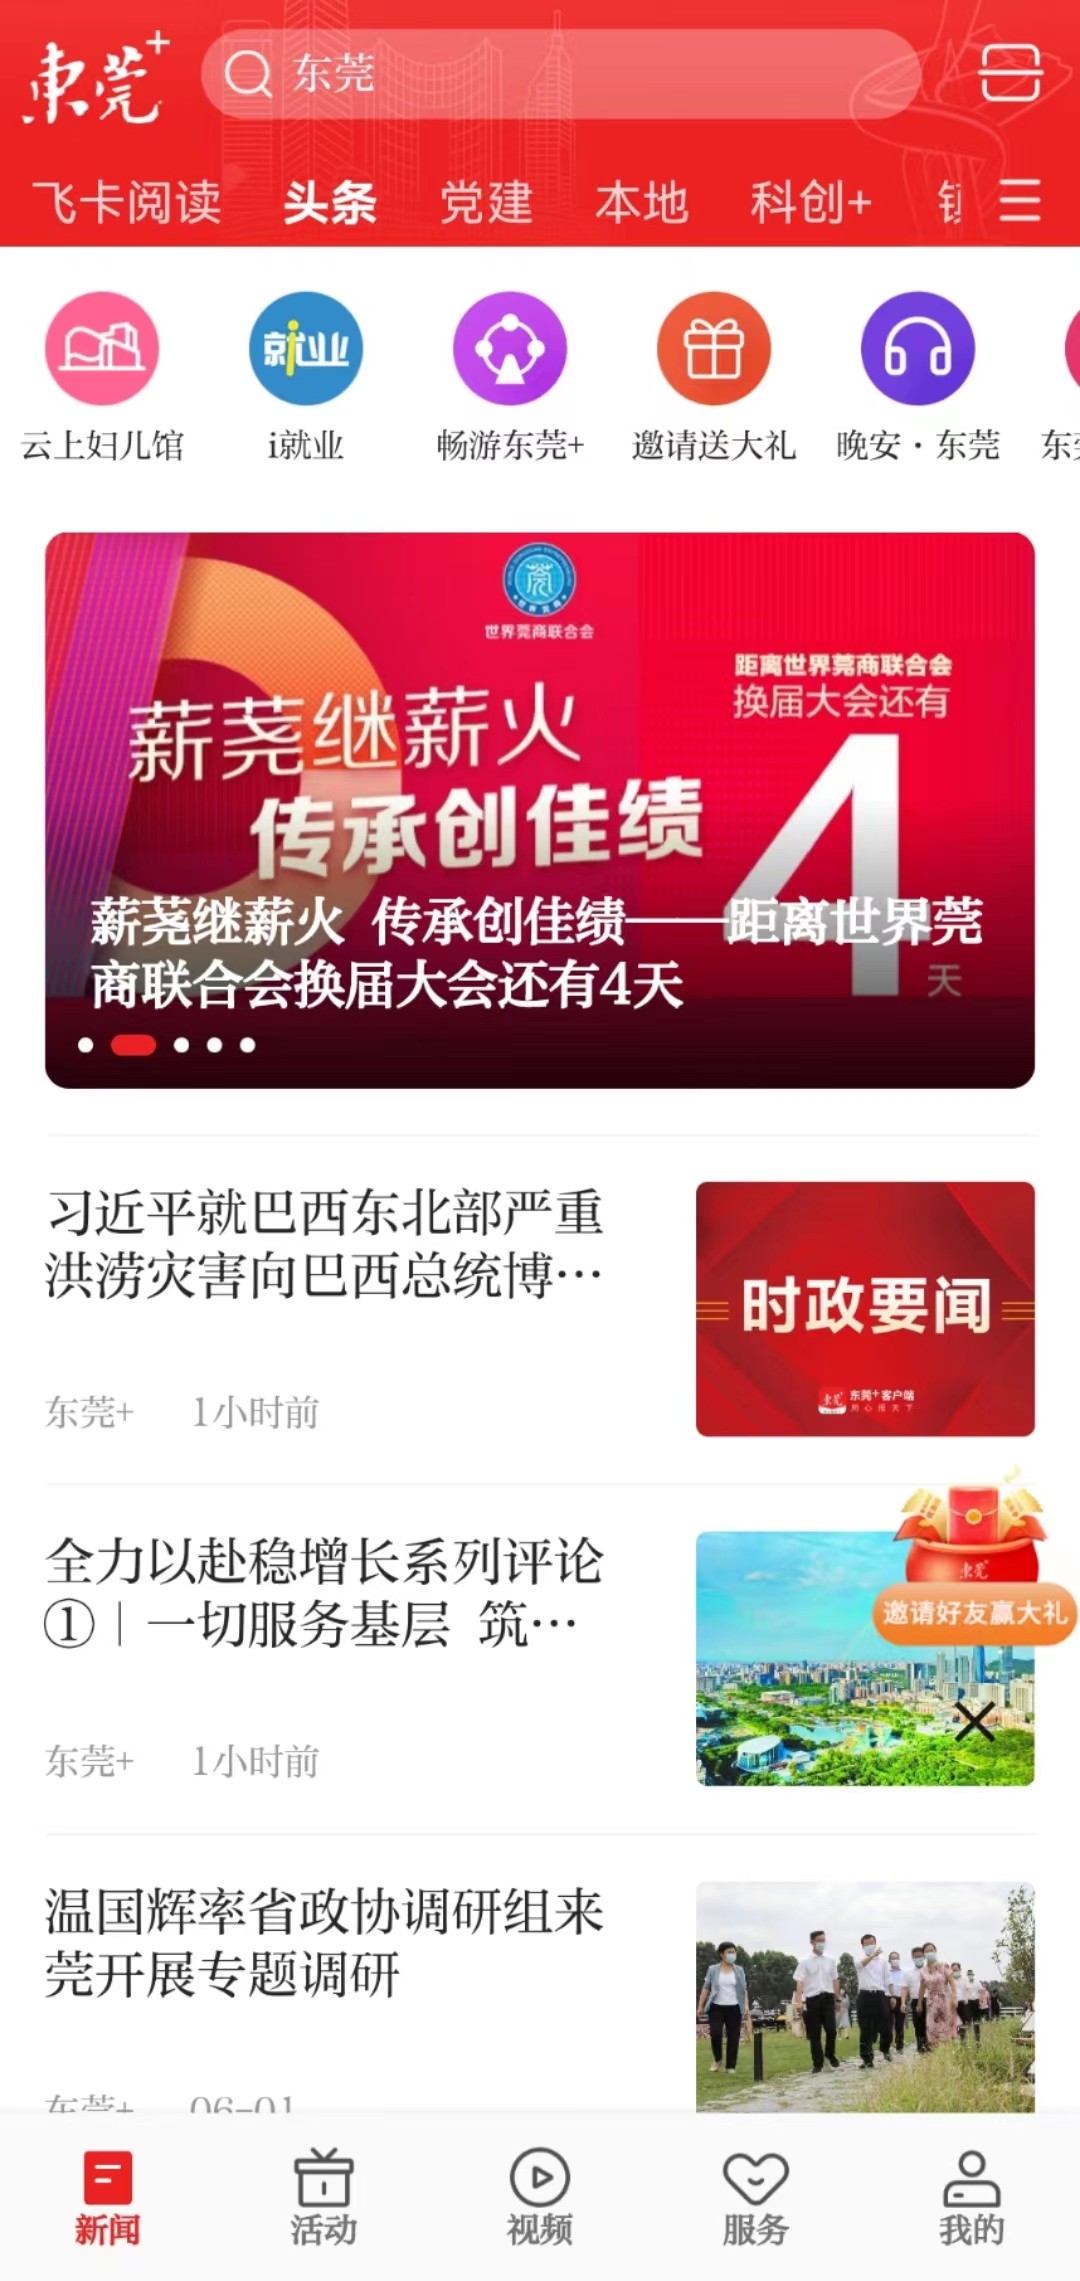 6月1日，i东莞客户端迎来全新改版升级，并正式更名为“东莞+”